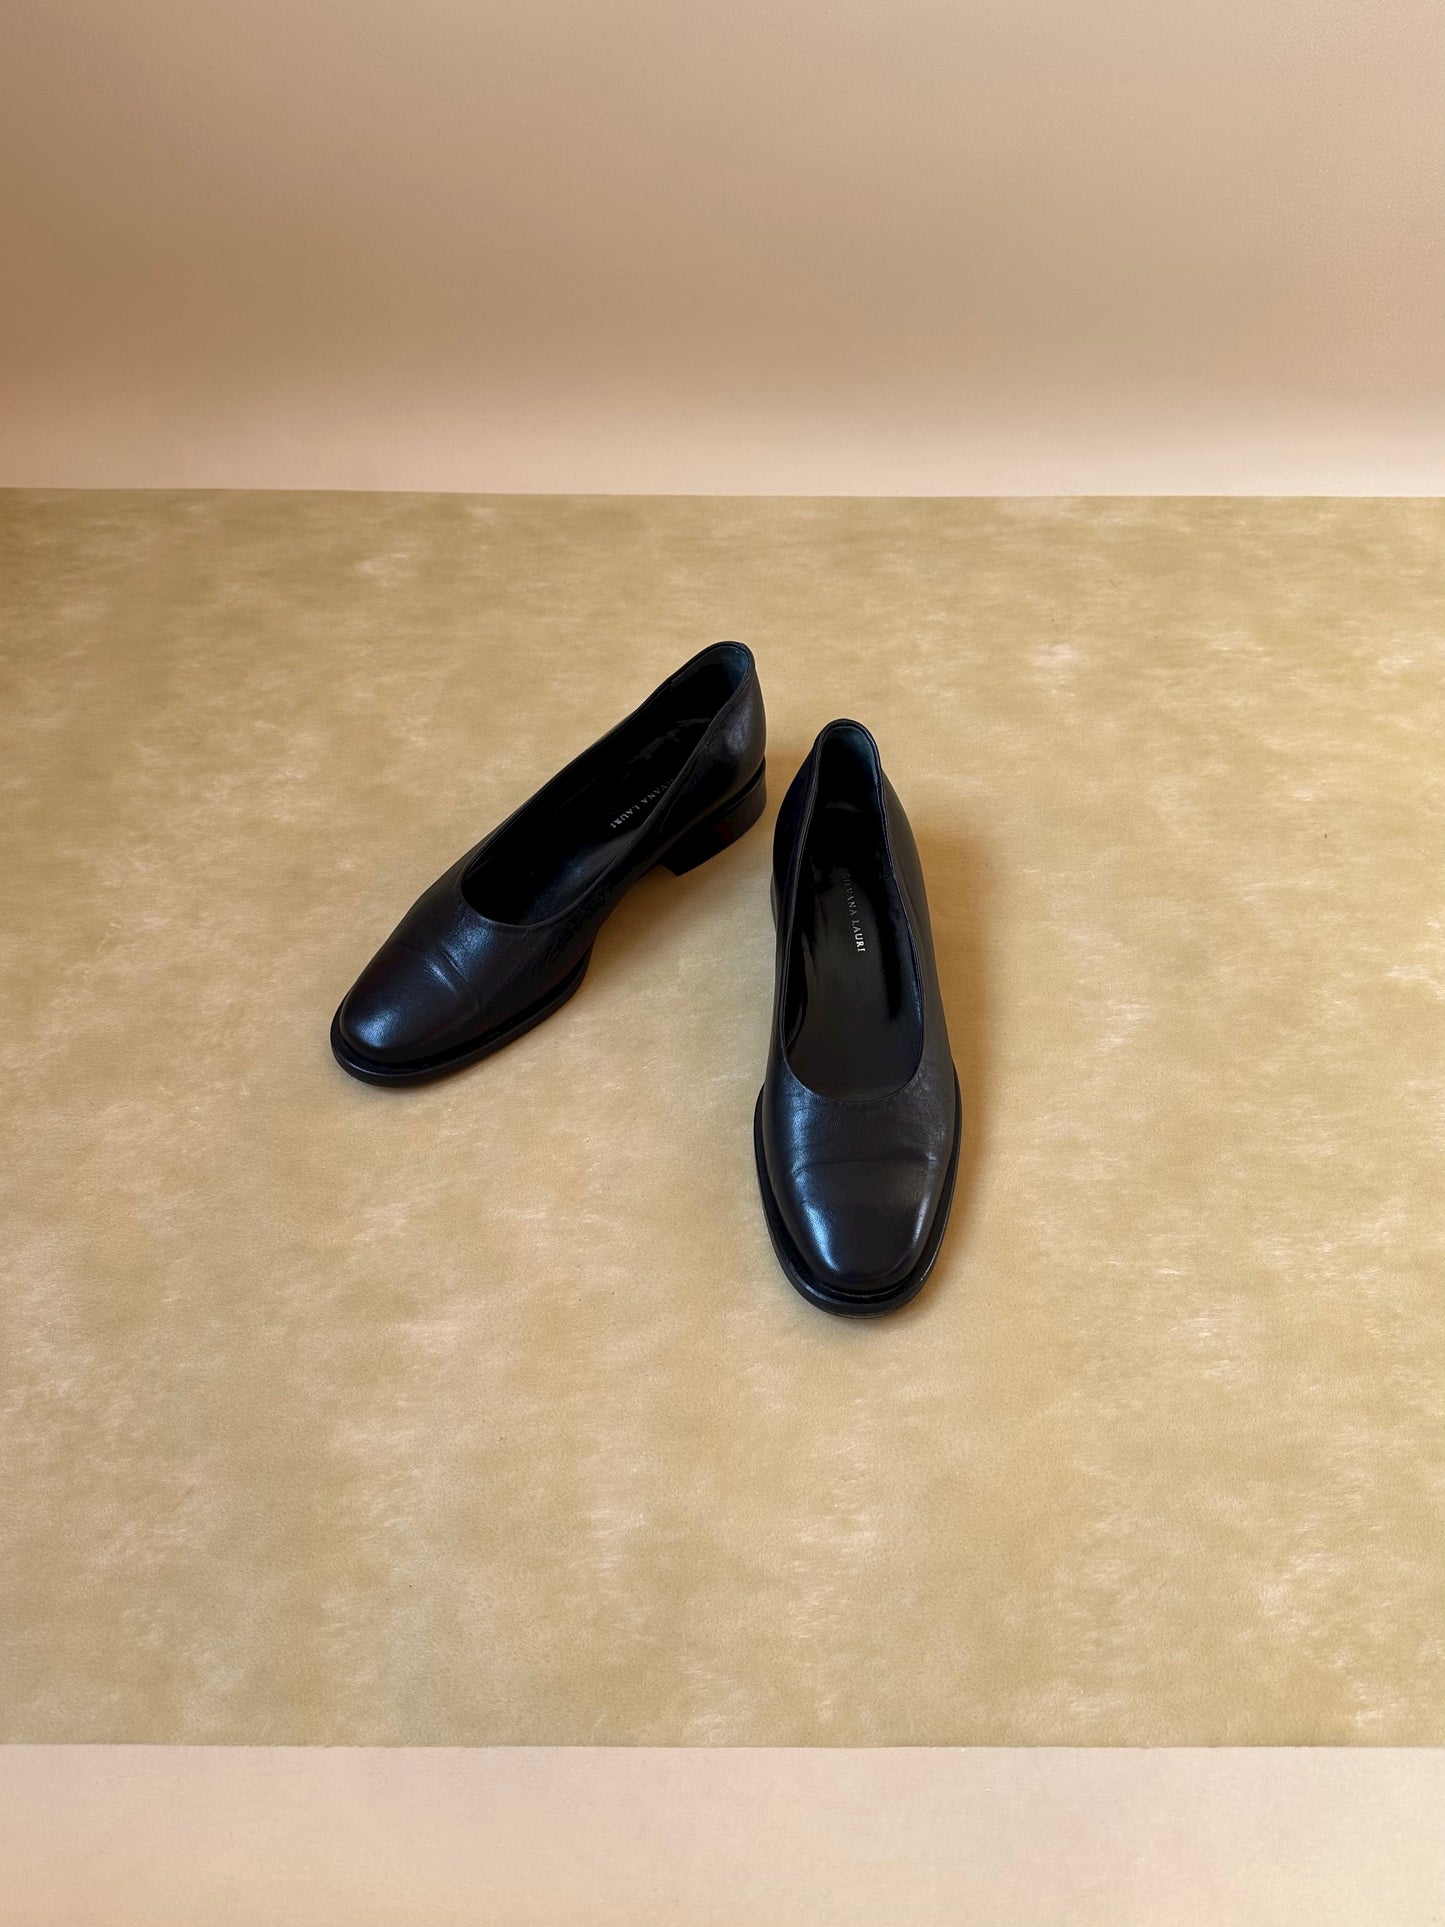 Vintage Black Leather Ballet Flats